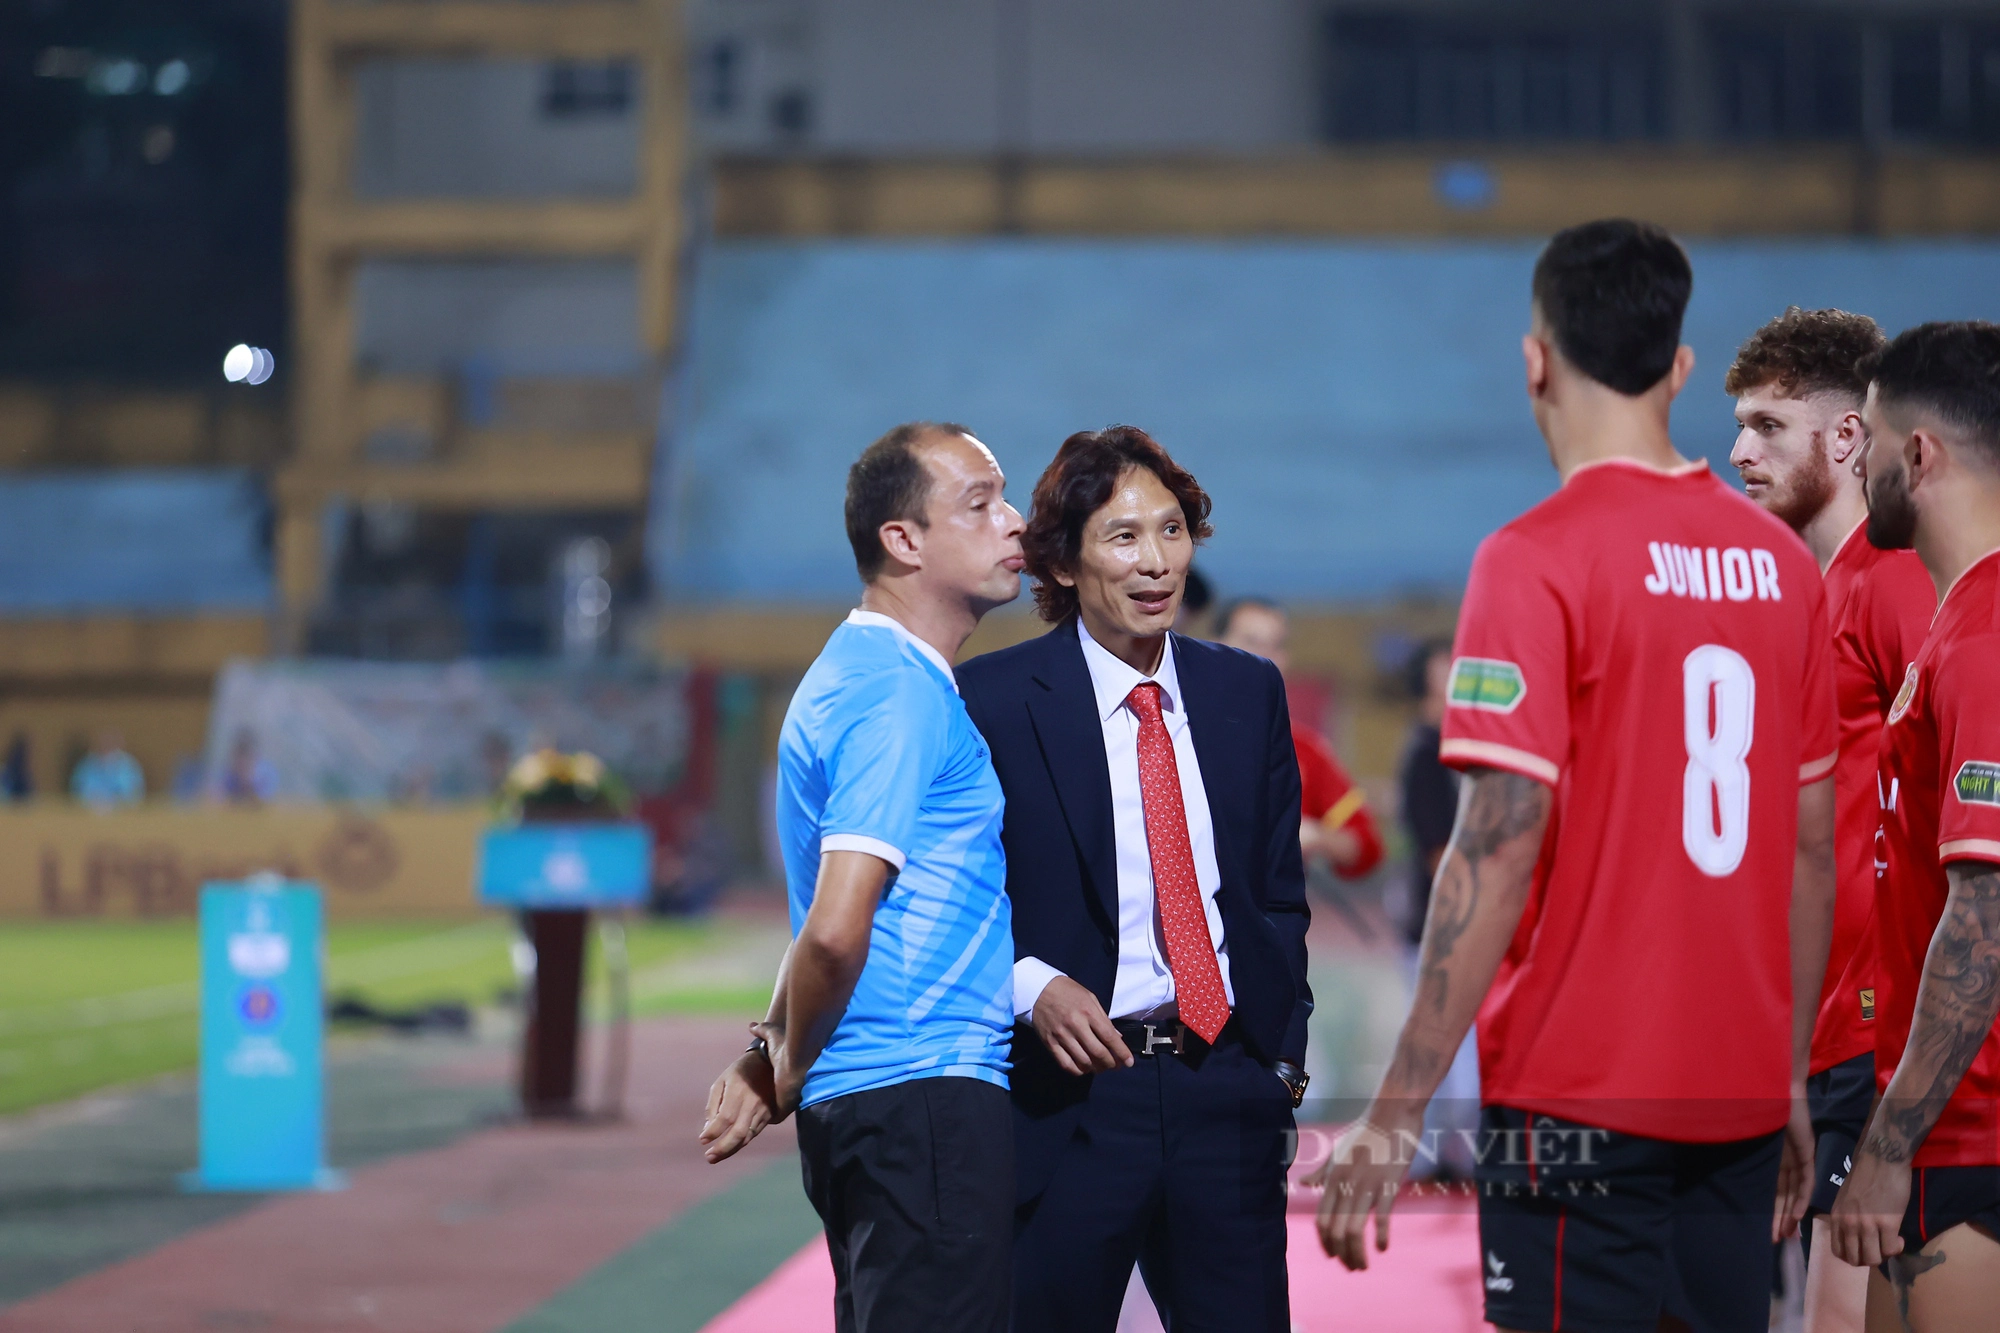 HLV Gong Oh-kuyn nói chuyện với các cầu thủ trước trận đấu - Ảnh 2.